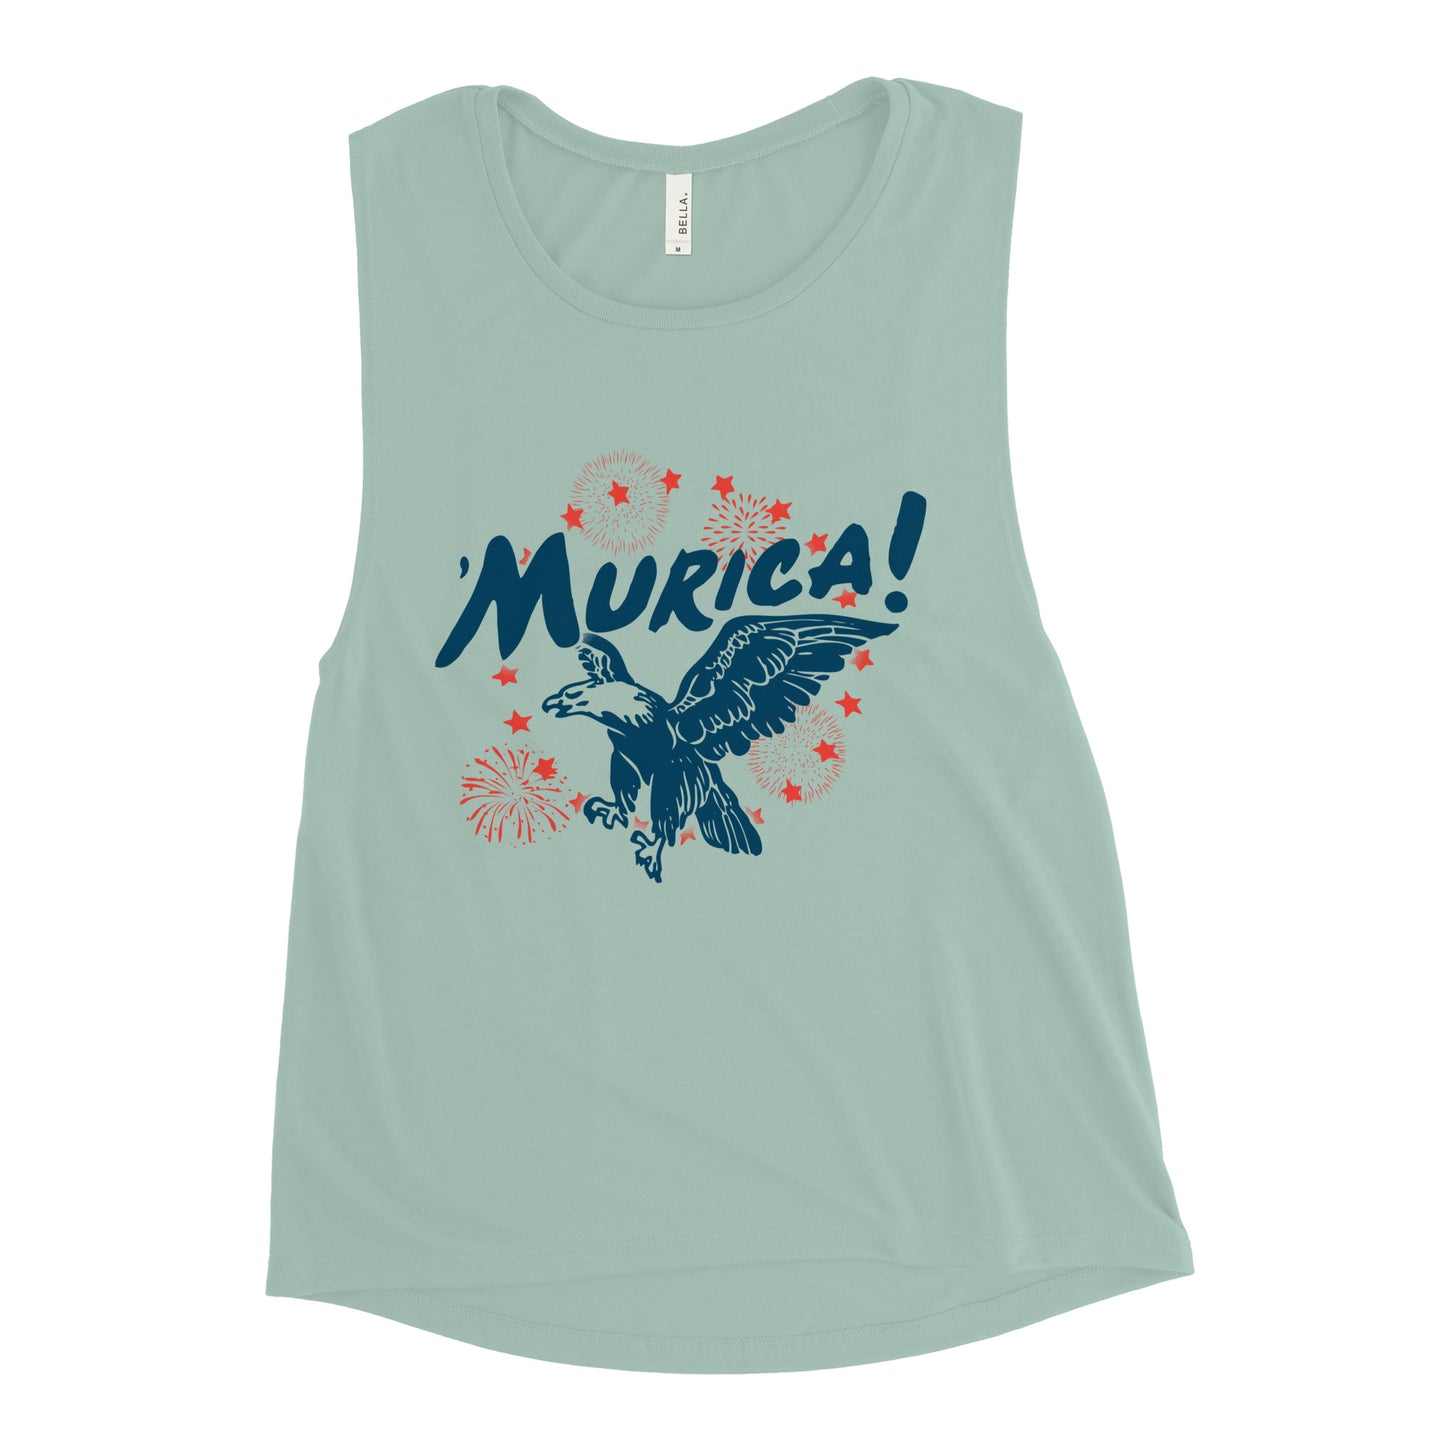 Murica Women's Muscle Tank